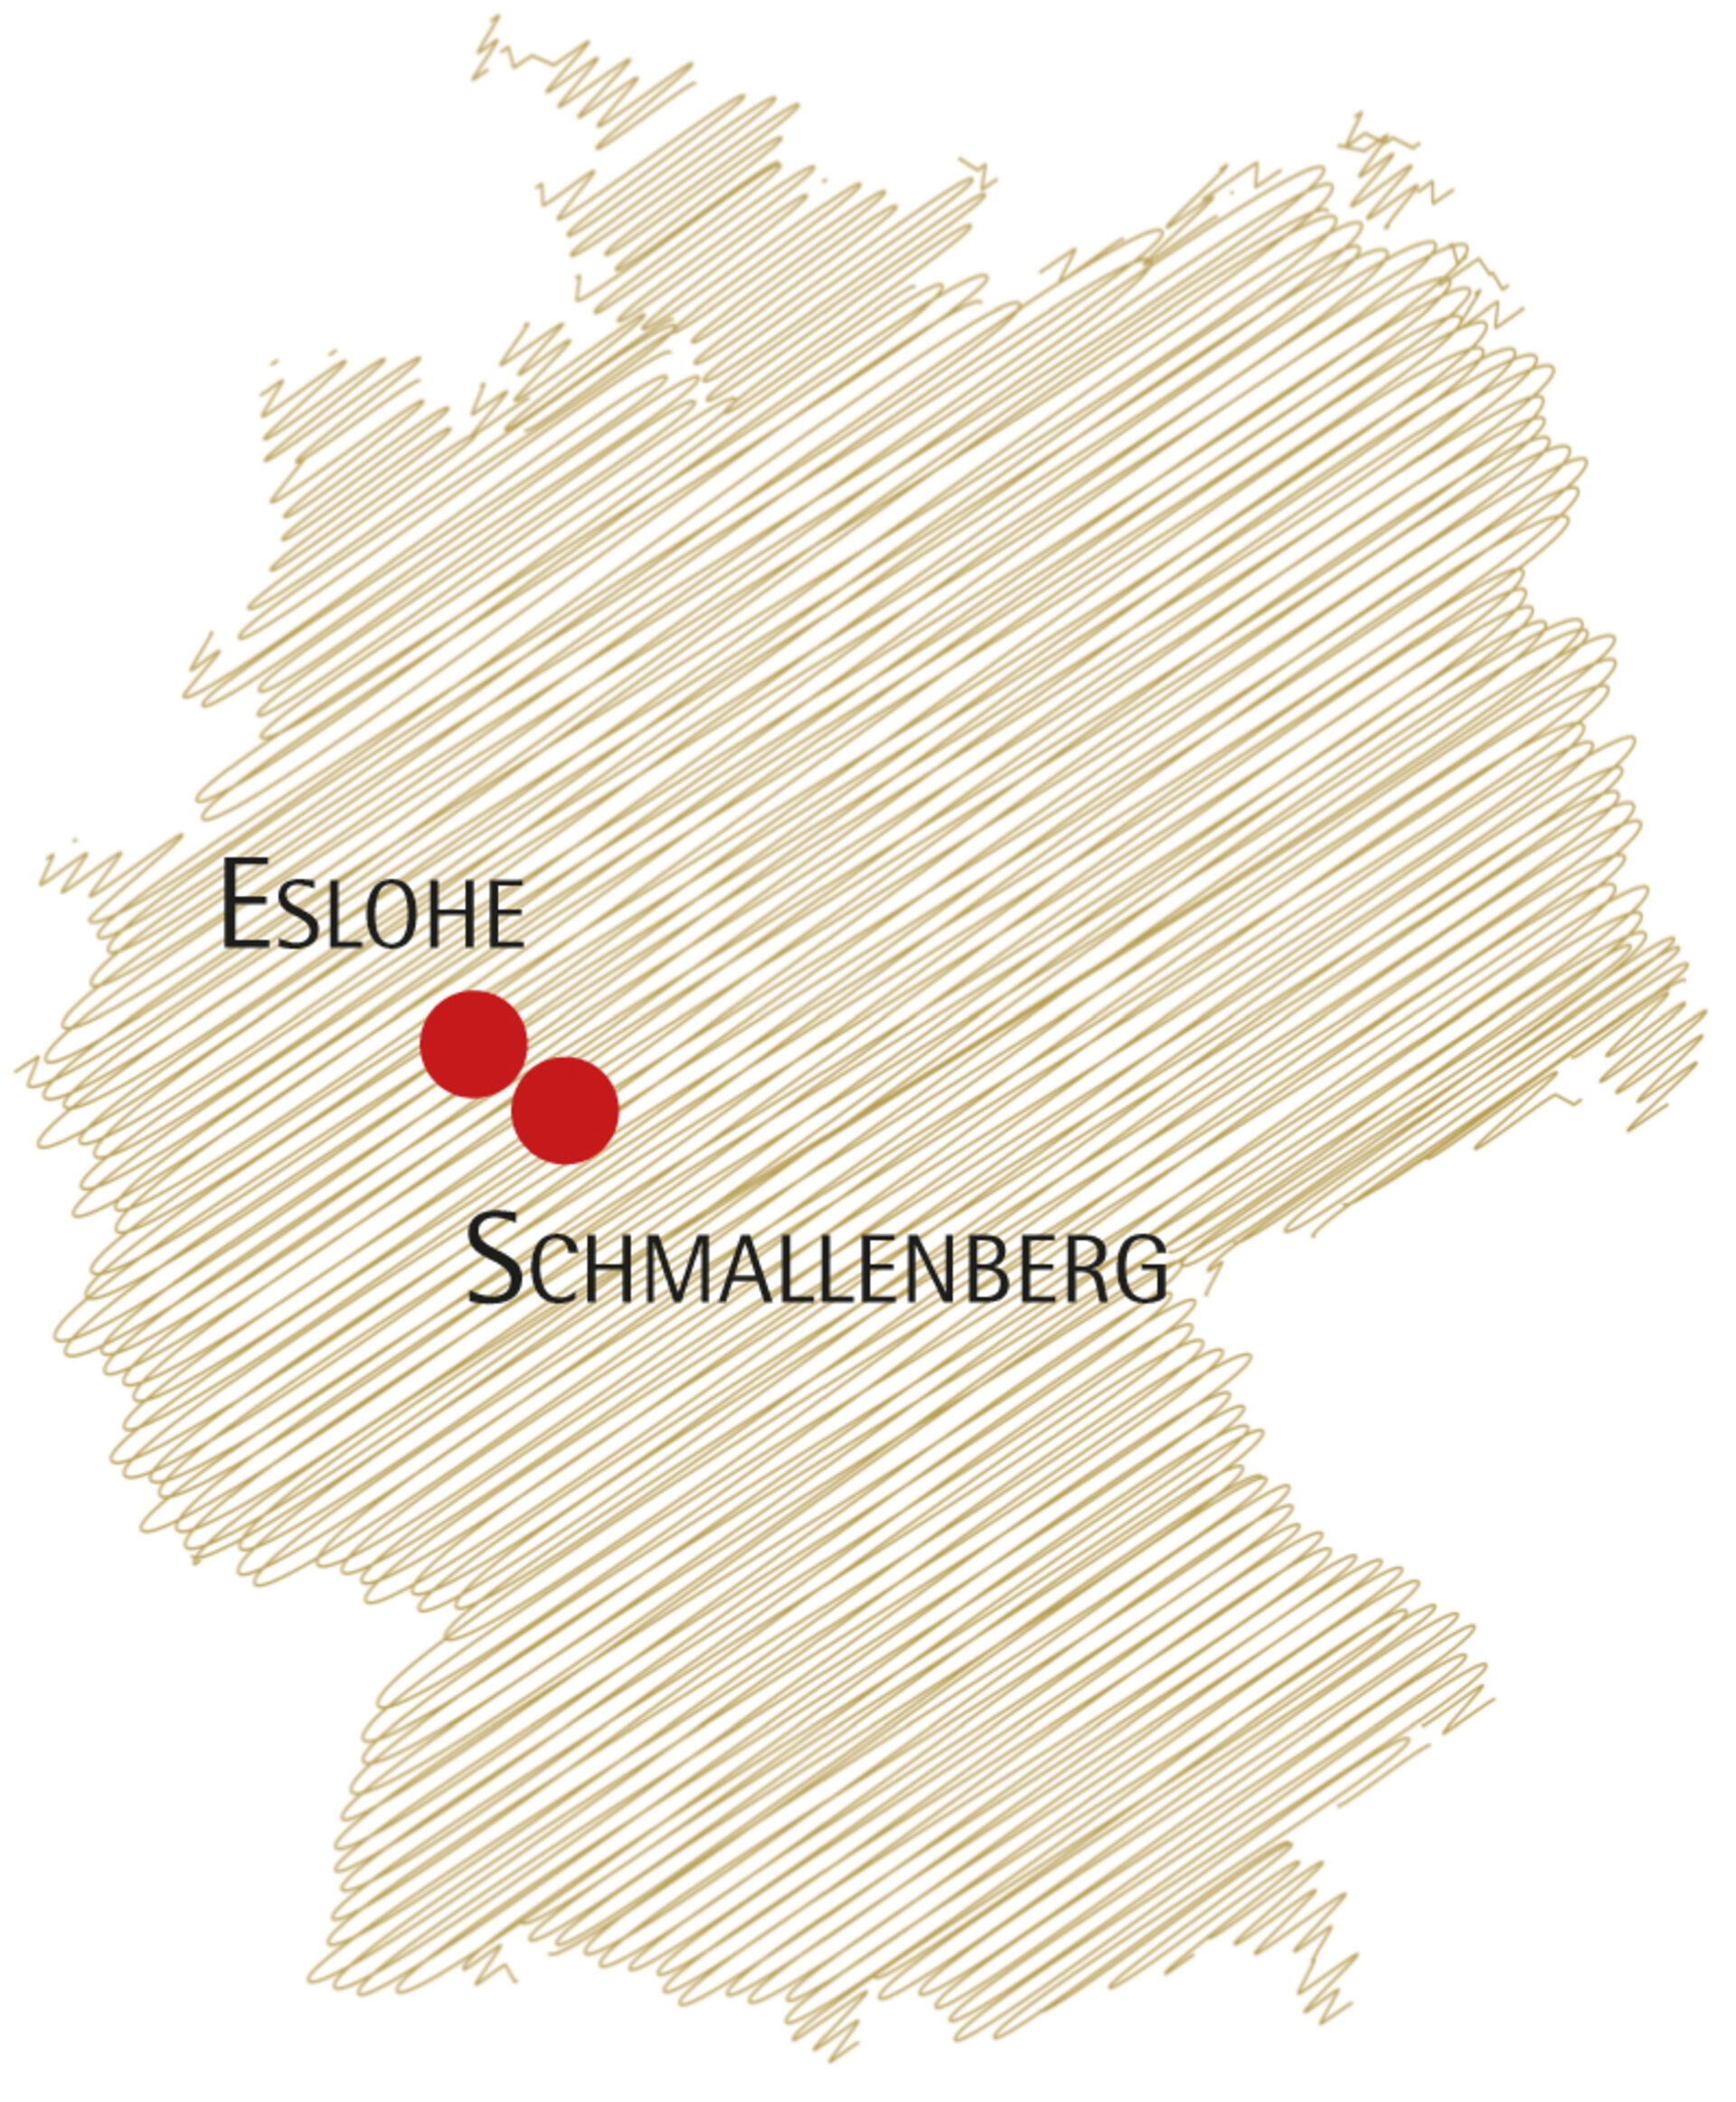 Location of the Schmallenberger Sauerland